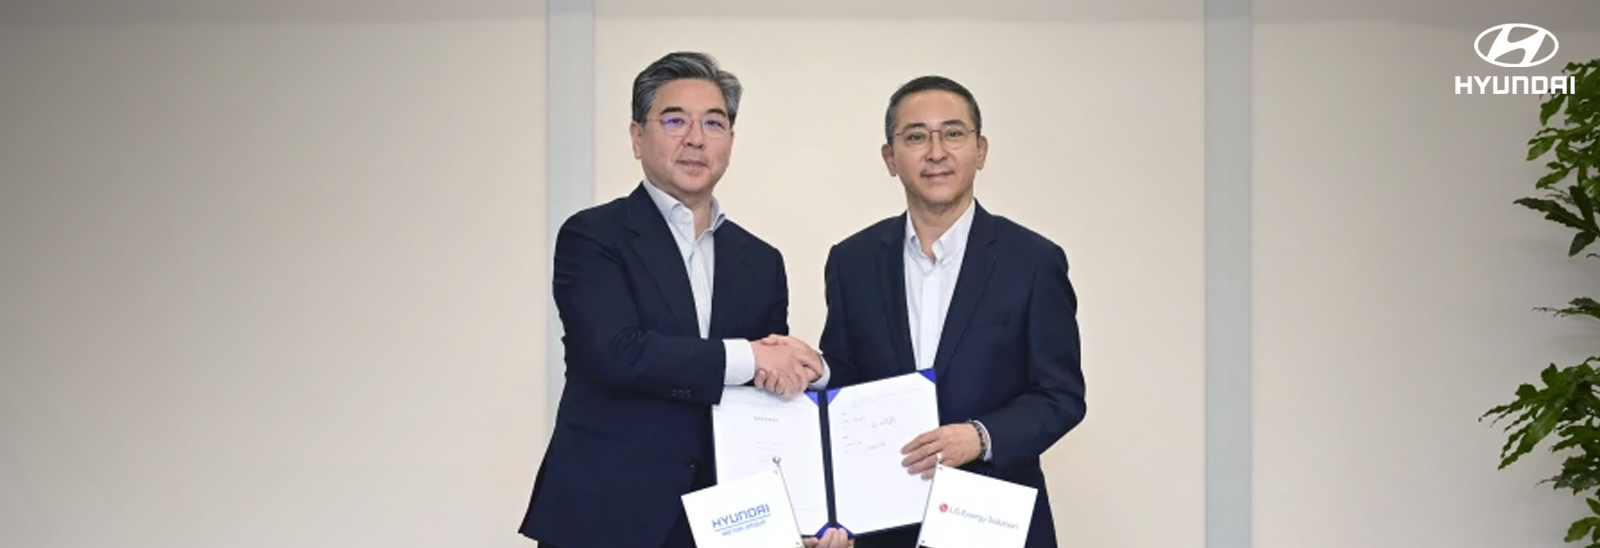 Ejecutivos de Hyundai y LG estrechando manos